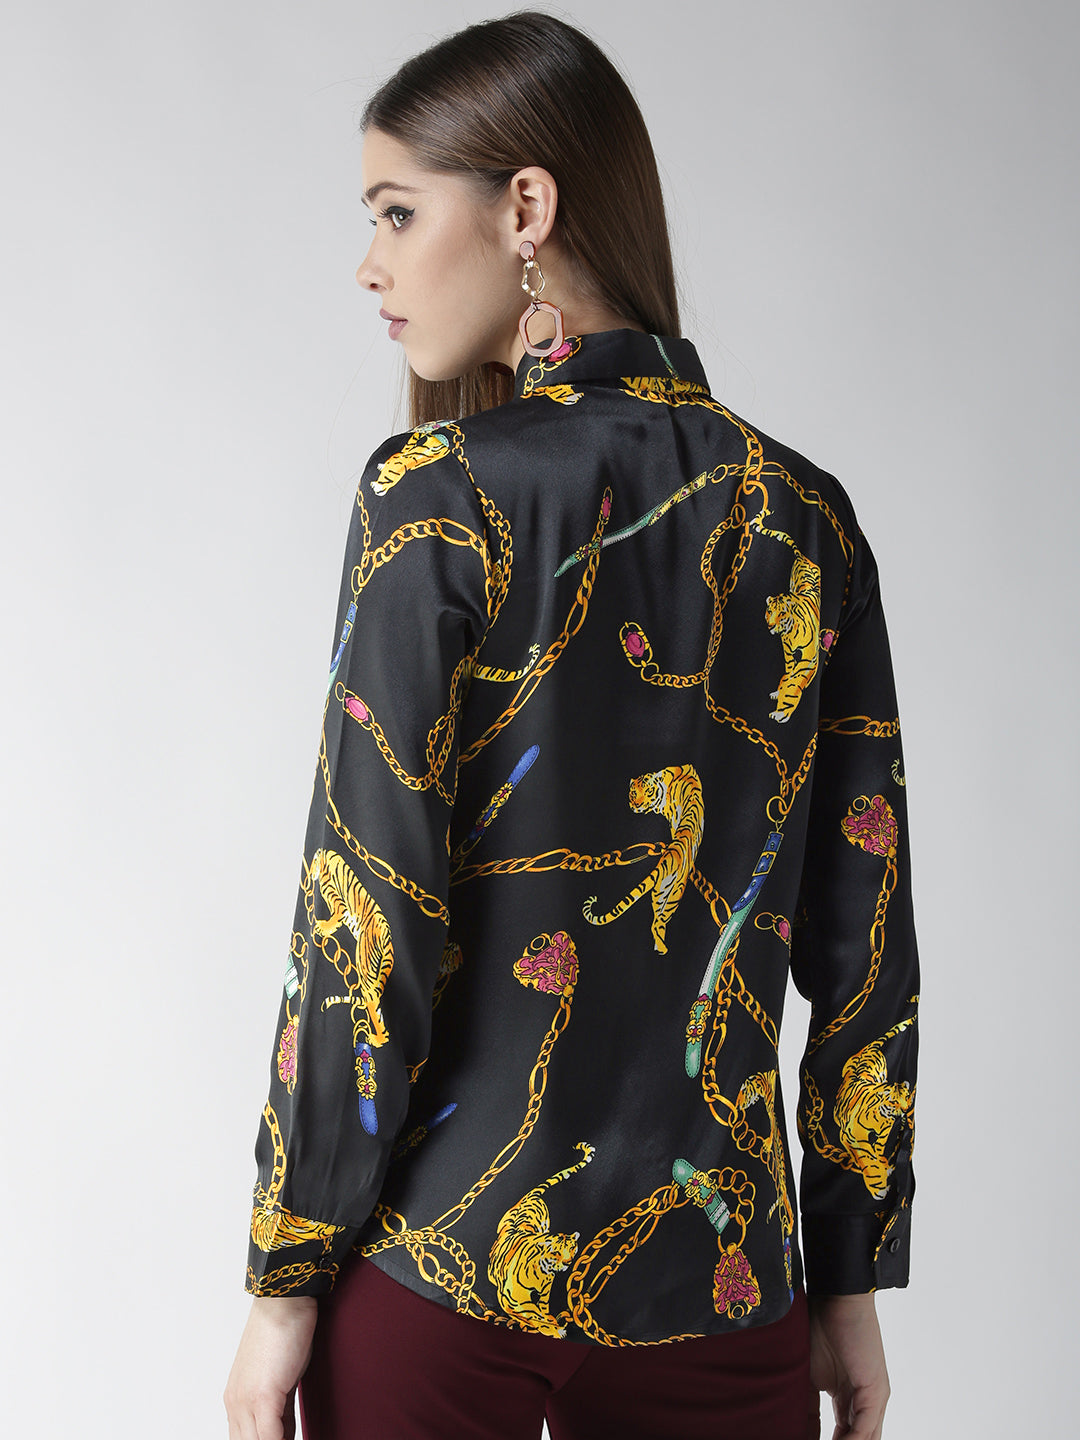 Women's Black and Golden Animal Chain Print Shirt - StyleStone